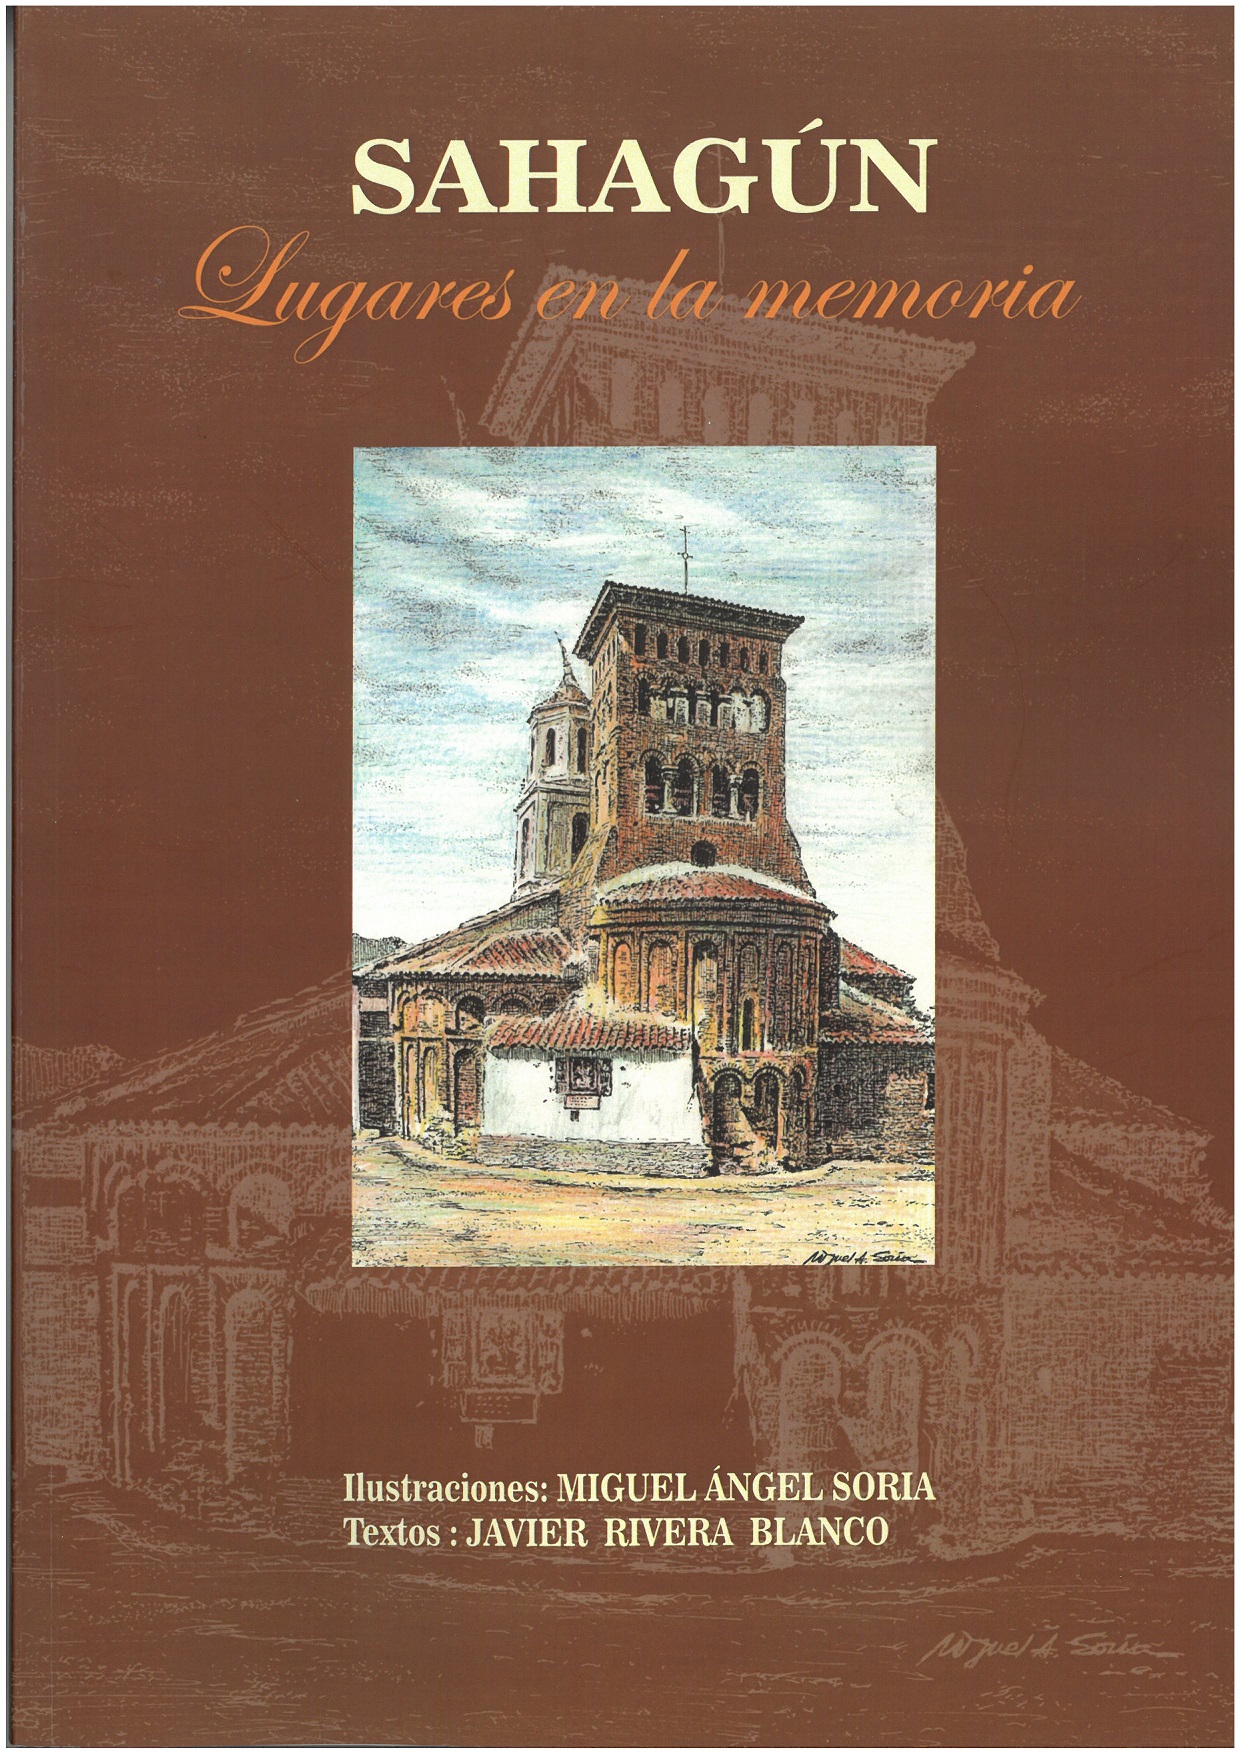 Imagen de portada del libro Sahagún. Lugares en la memoria